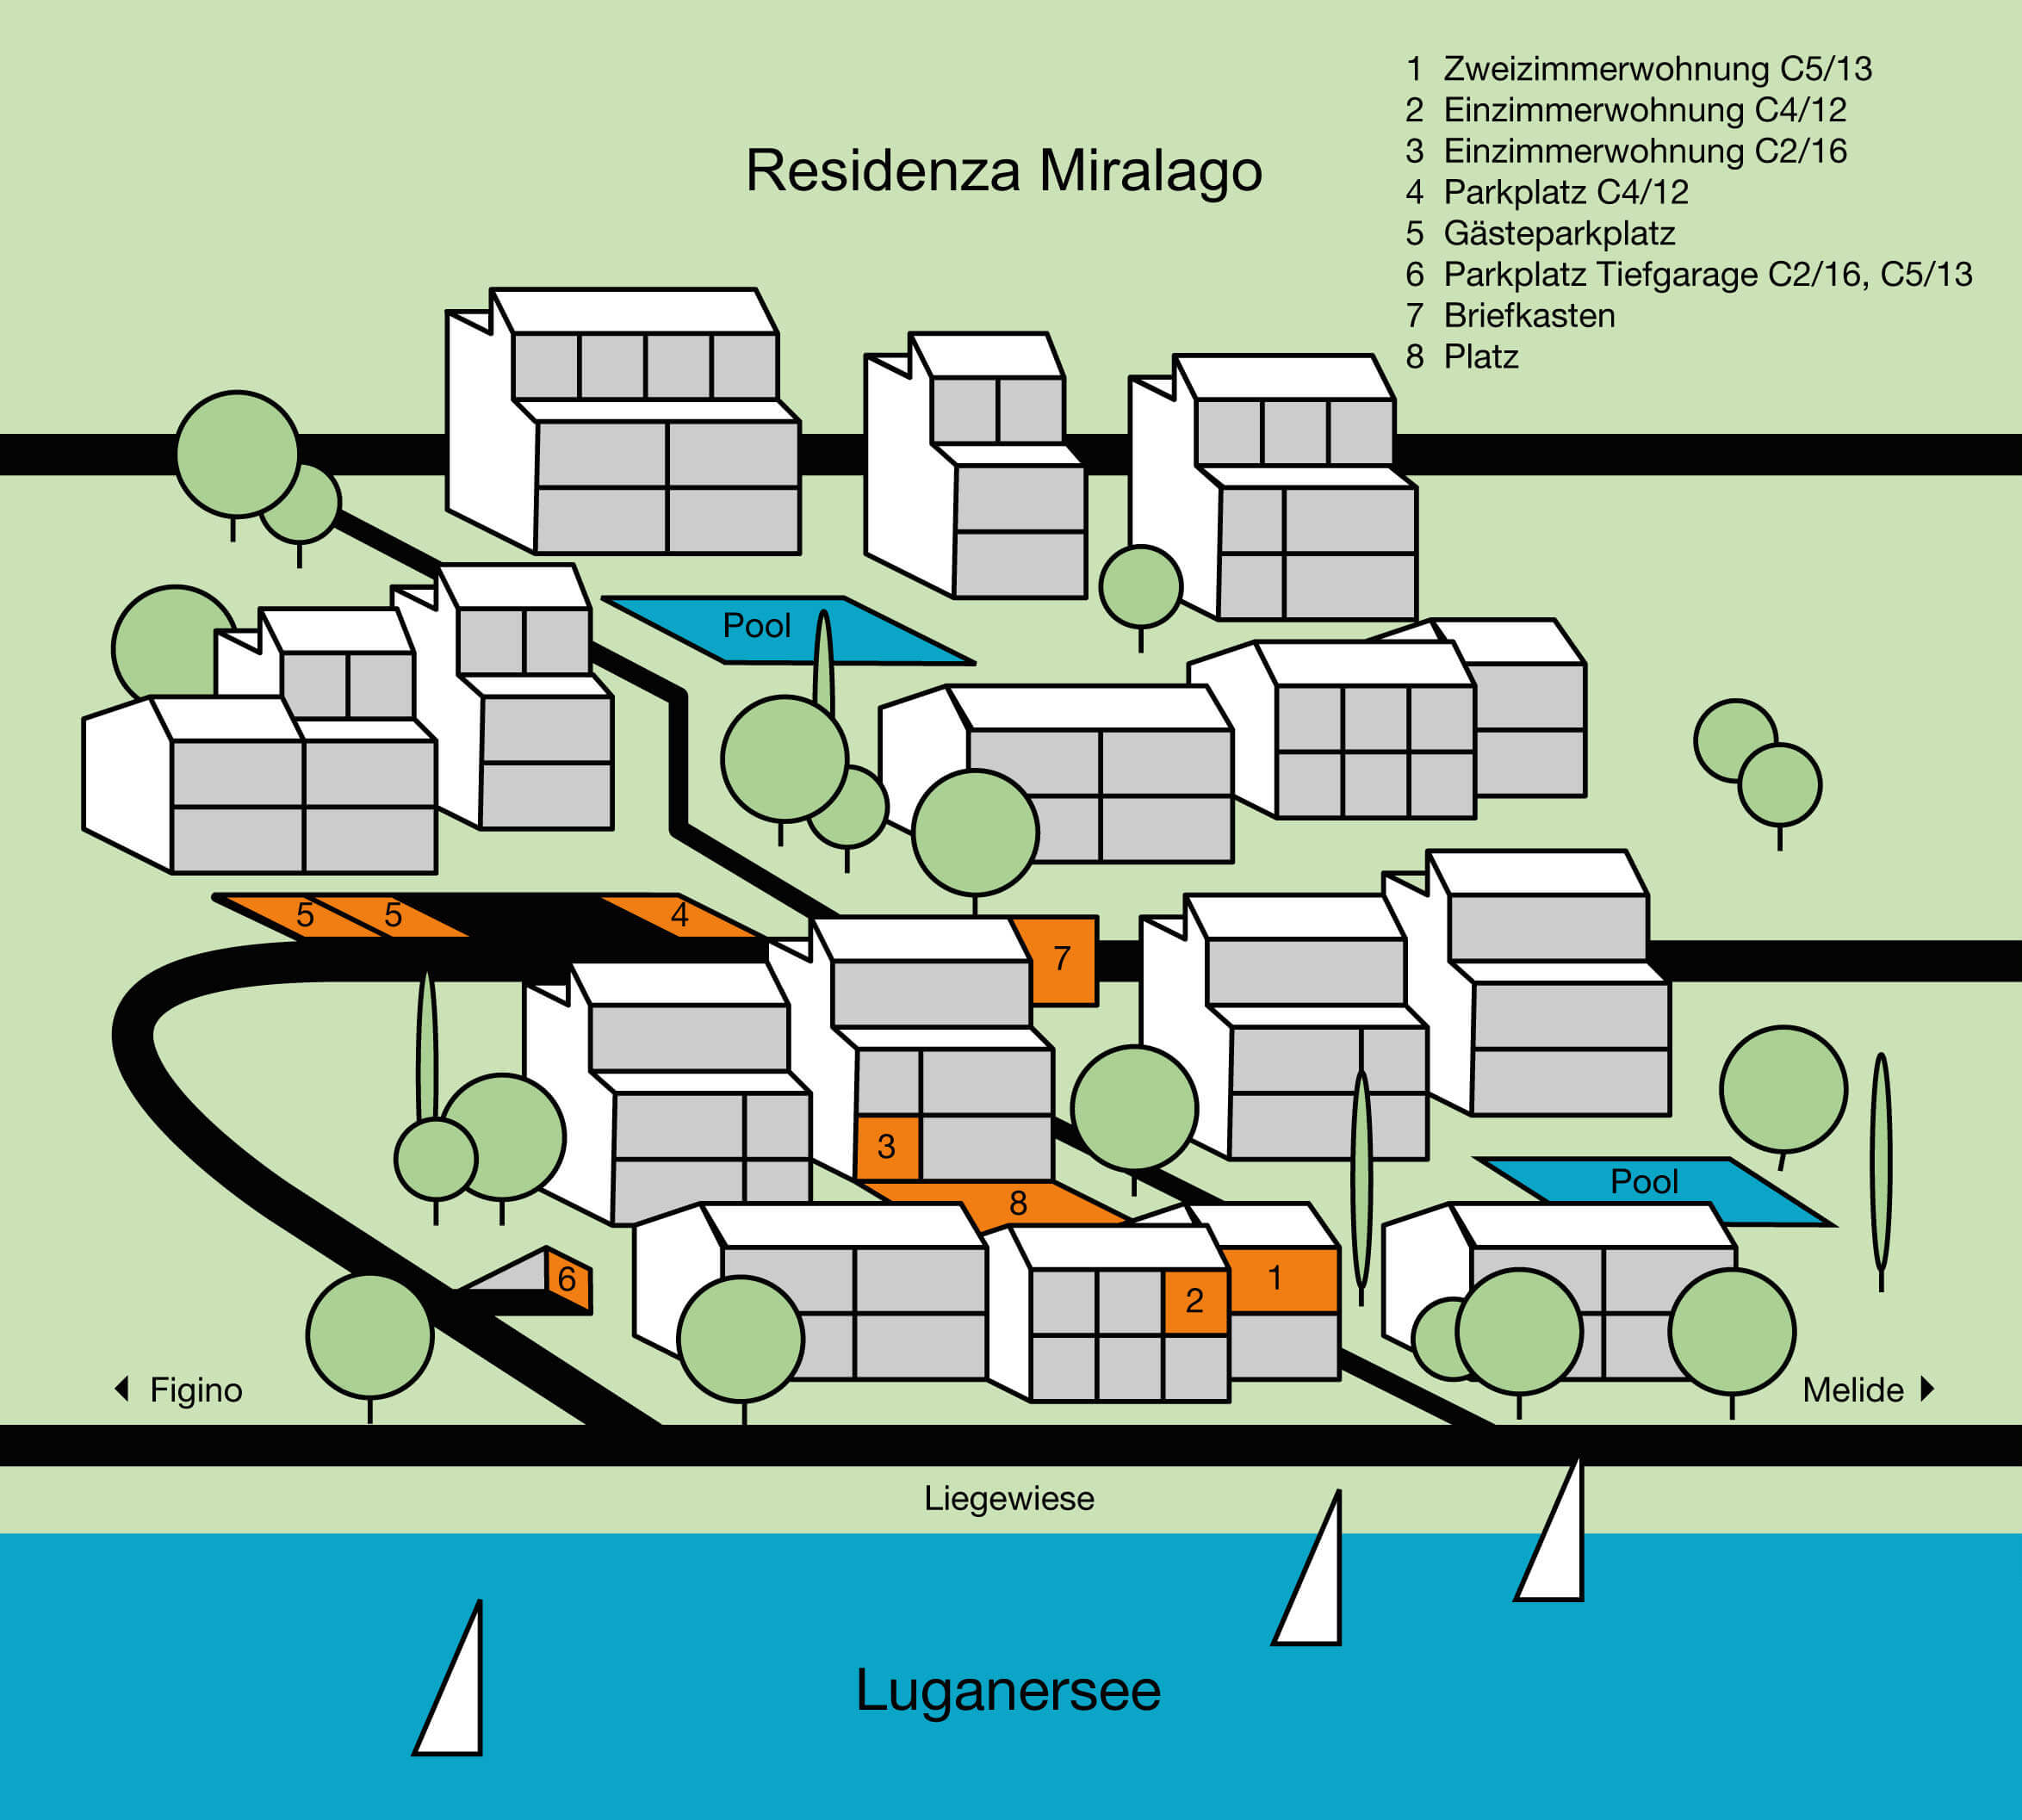 Dieser Plan zeigt eine Übersicht der Residenza Miralago